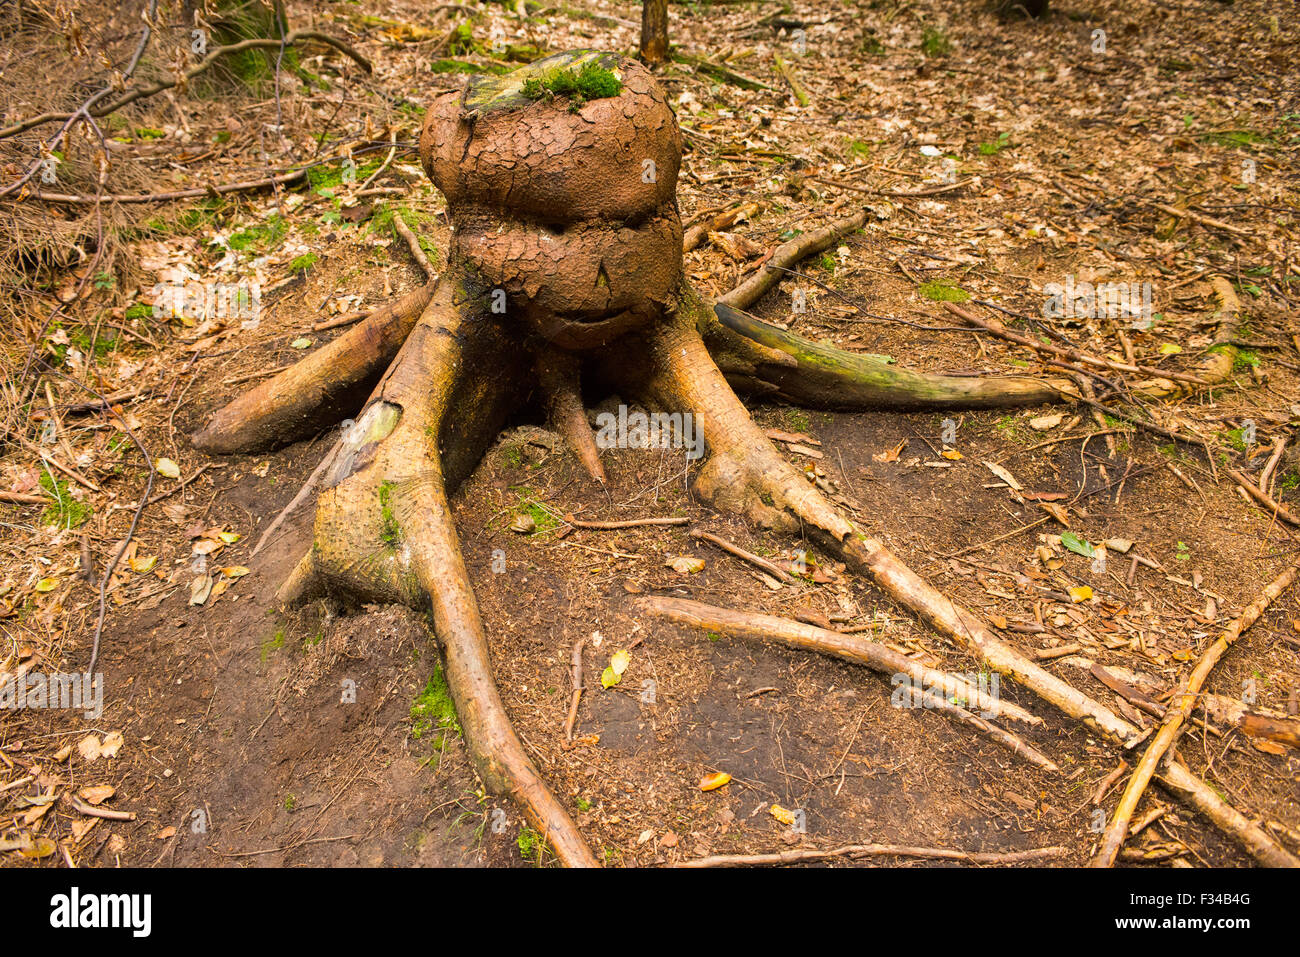 Monster criatura hecha de tocón de árbol en el bosque Foto de stock